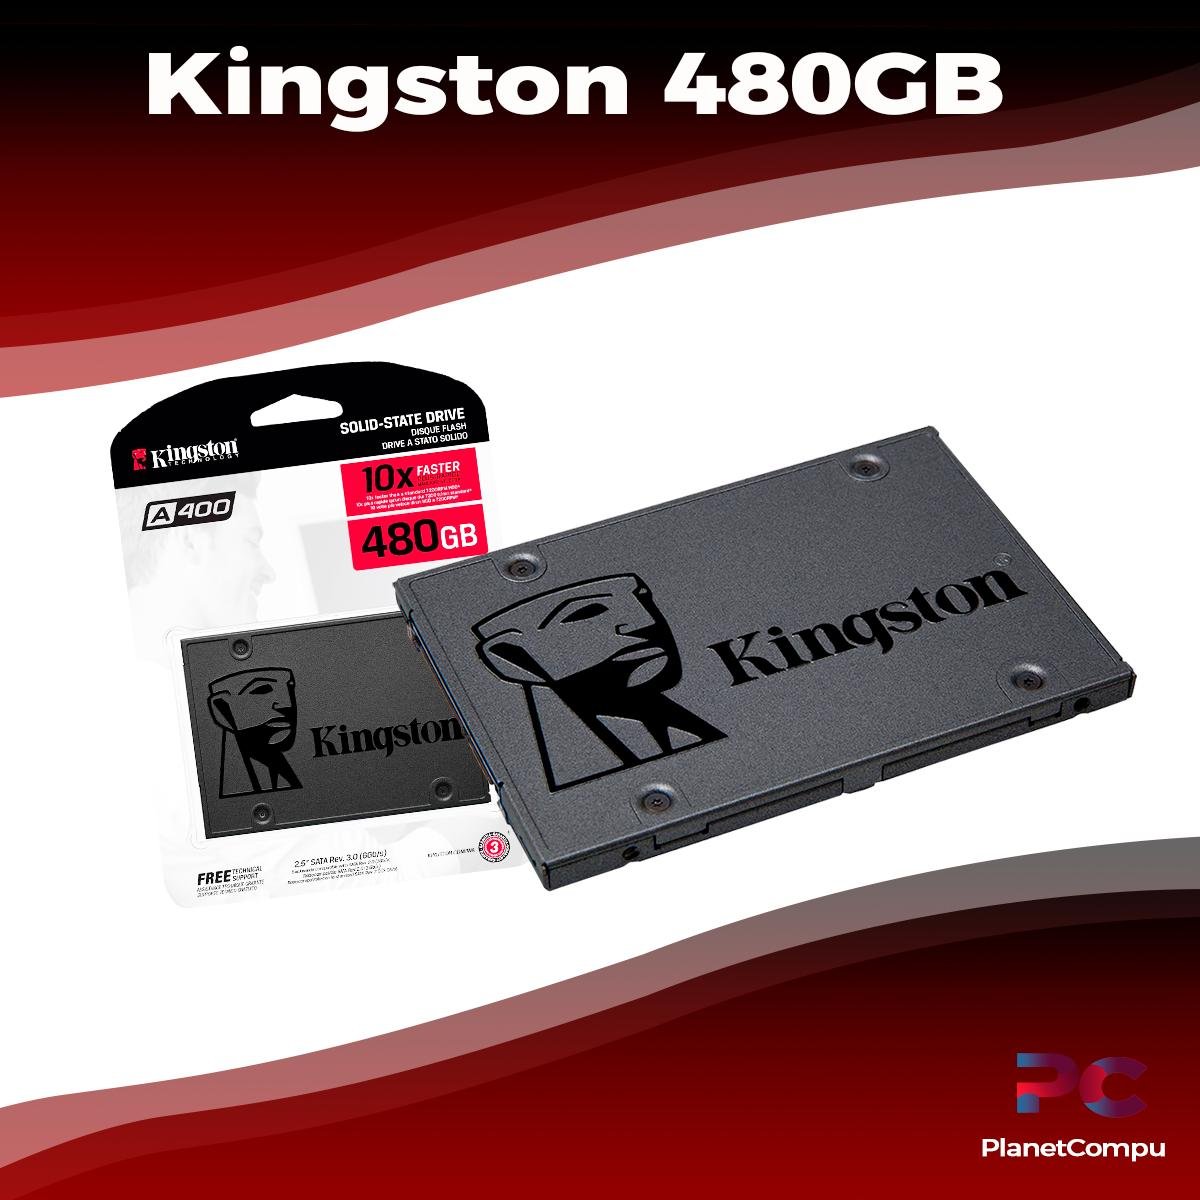 SSD Kingston GB A400 PlanetCompu – de PC